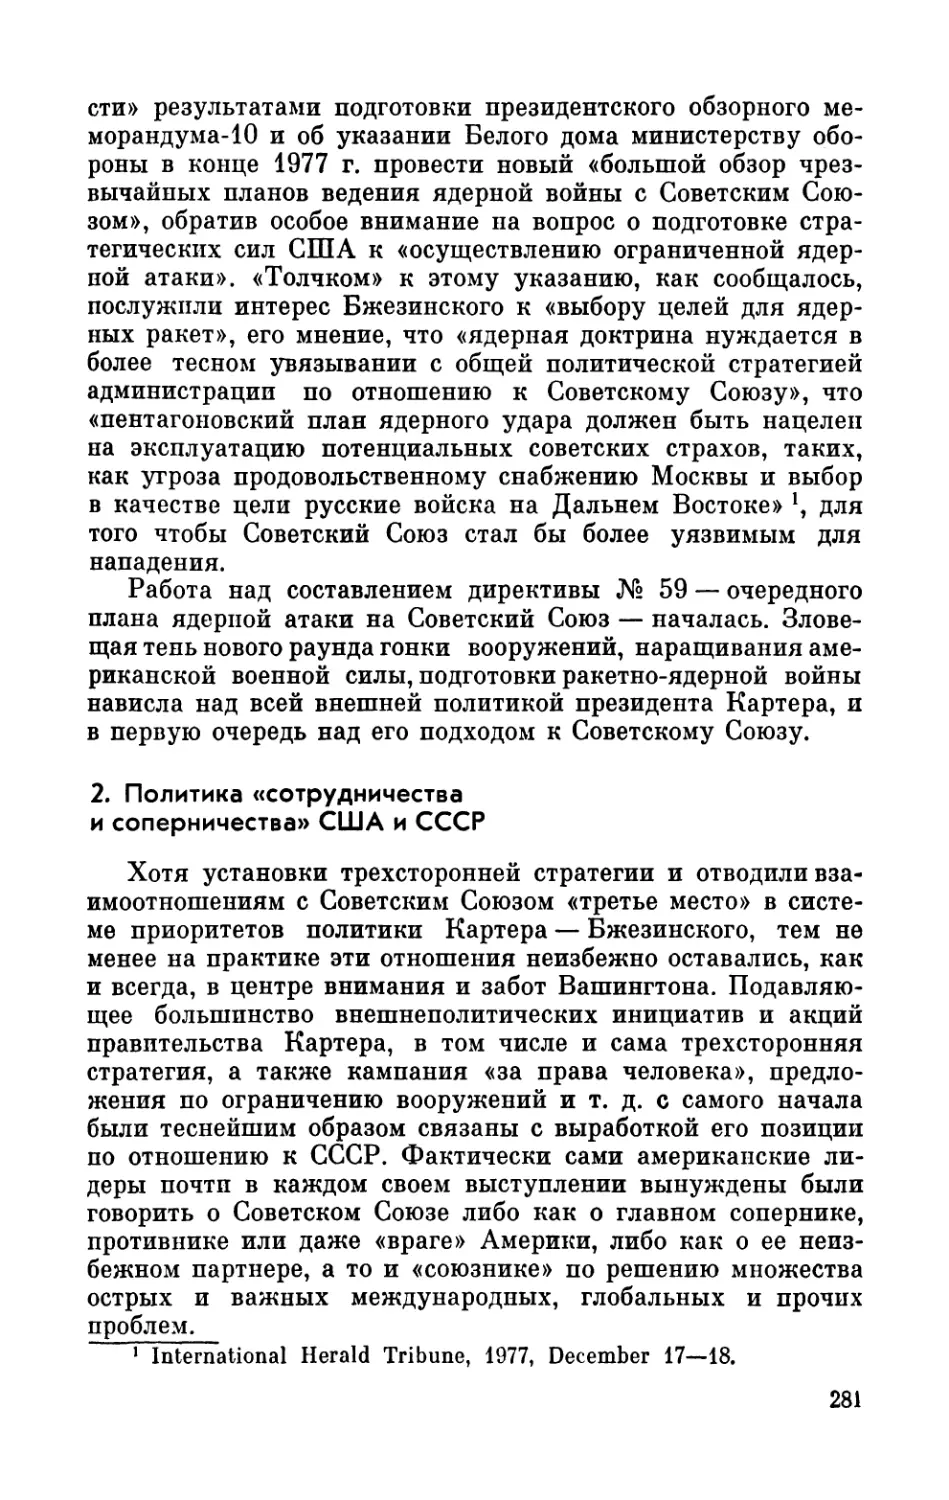 2. Политика «сотрудничества и соперничества» США и СССР